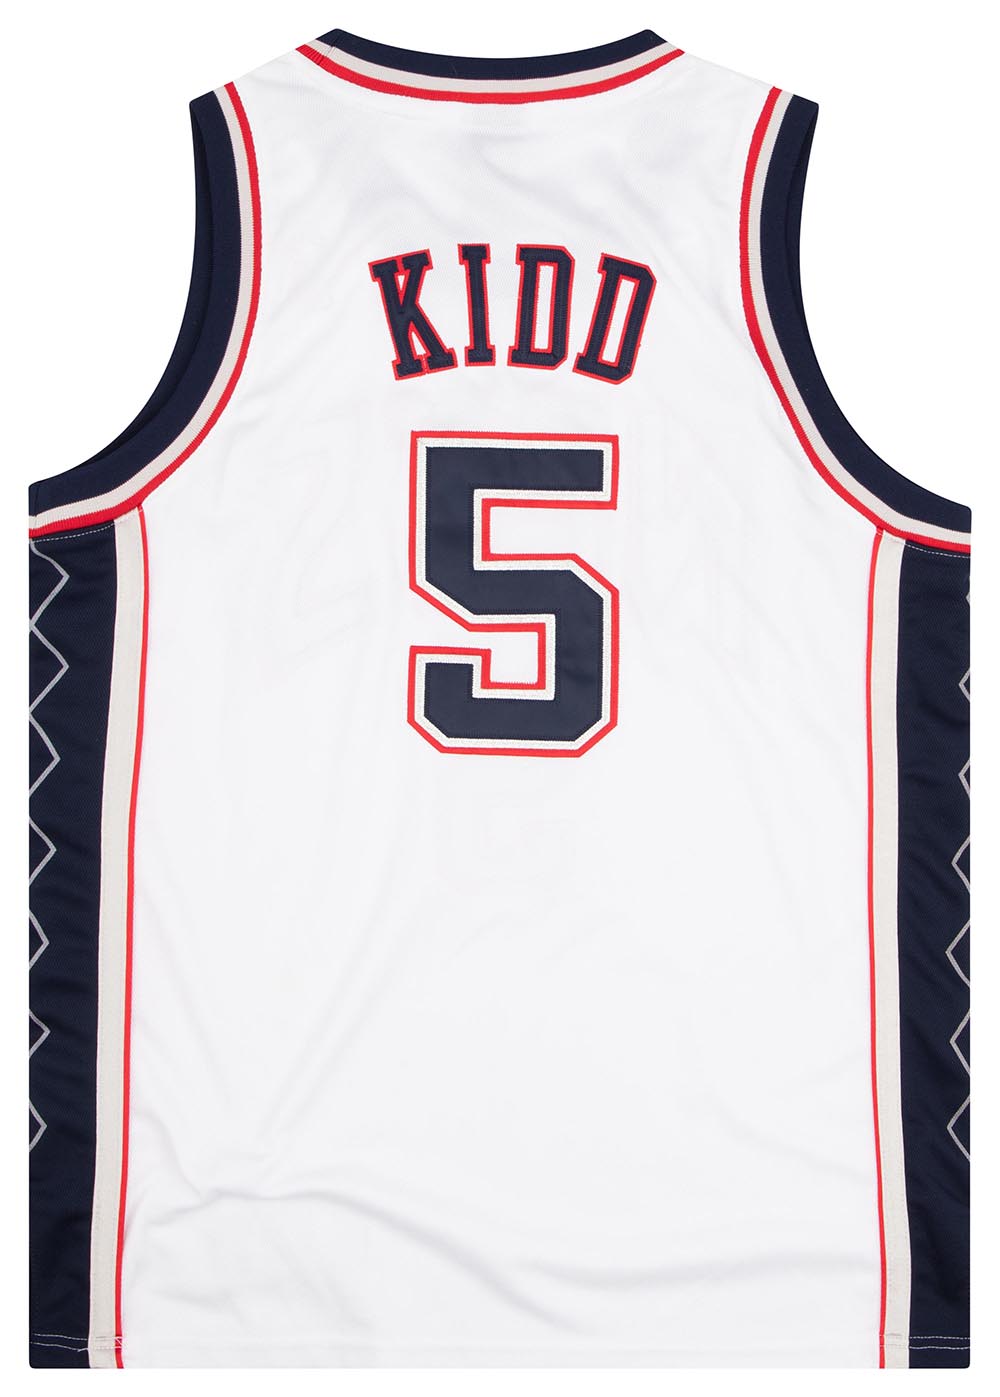 Jason Kidd #5 New Jersey Nets Adidas Authentic Jersey NBA Sz 52